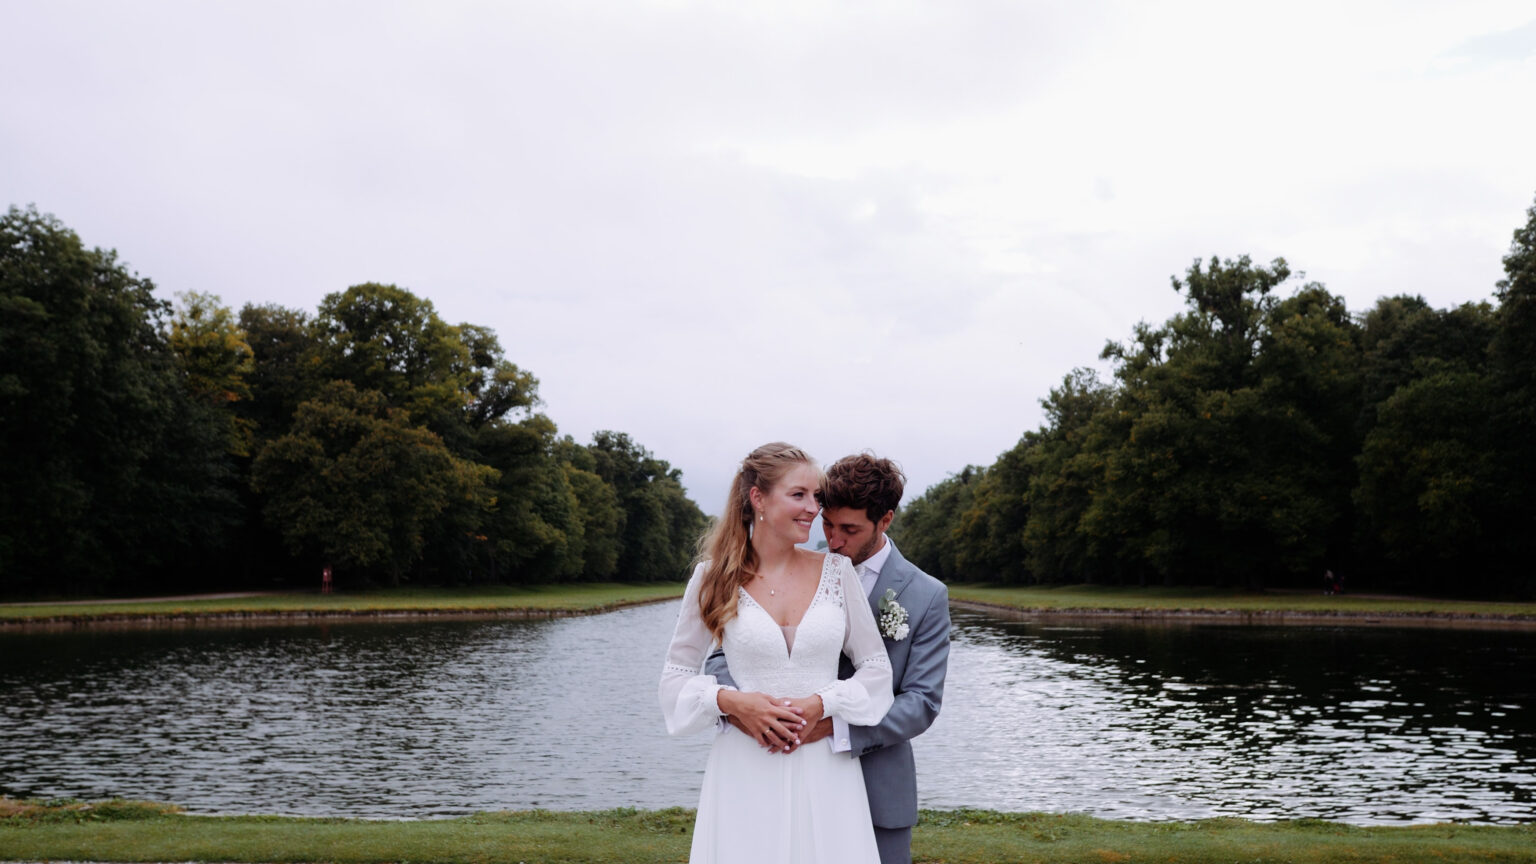 Pareja internacional de recién casados posando frente a un río en un parque, con un entorno natural y sereno como fondo. En los parques del Palacio de Nymphenburg, Munich